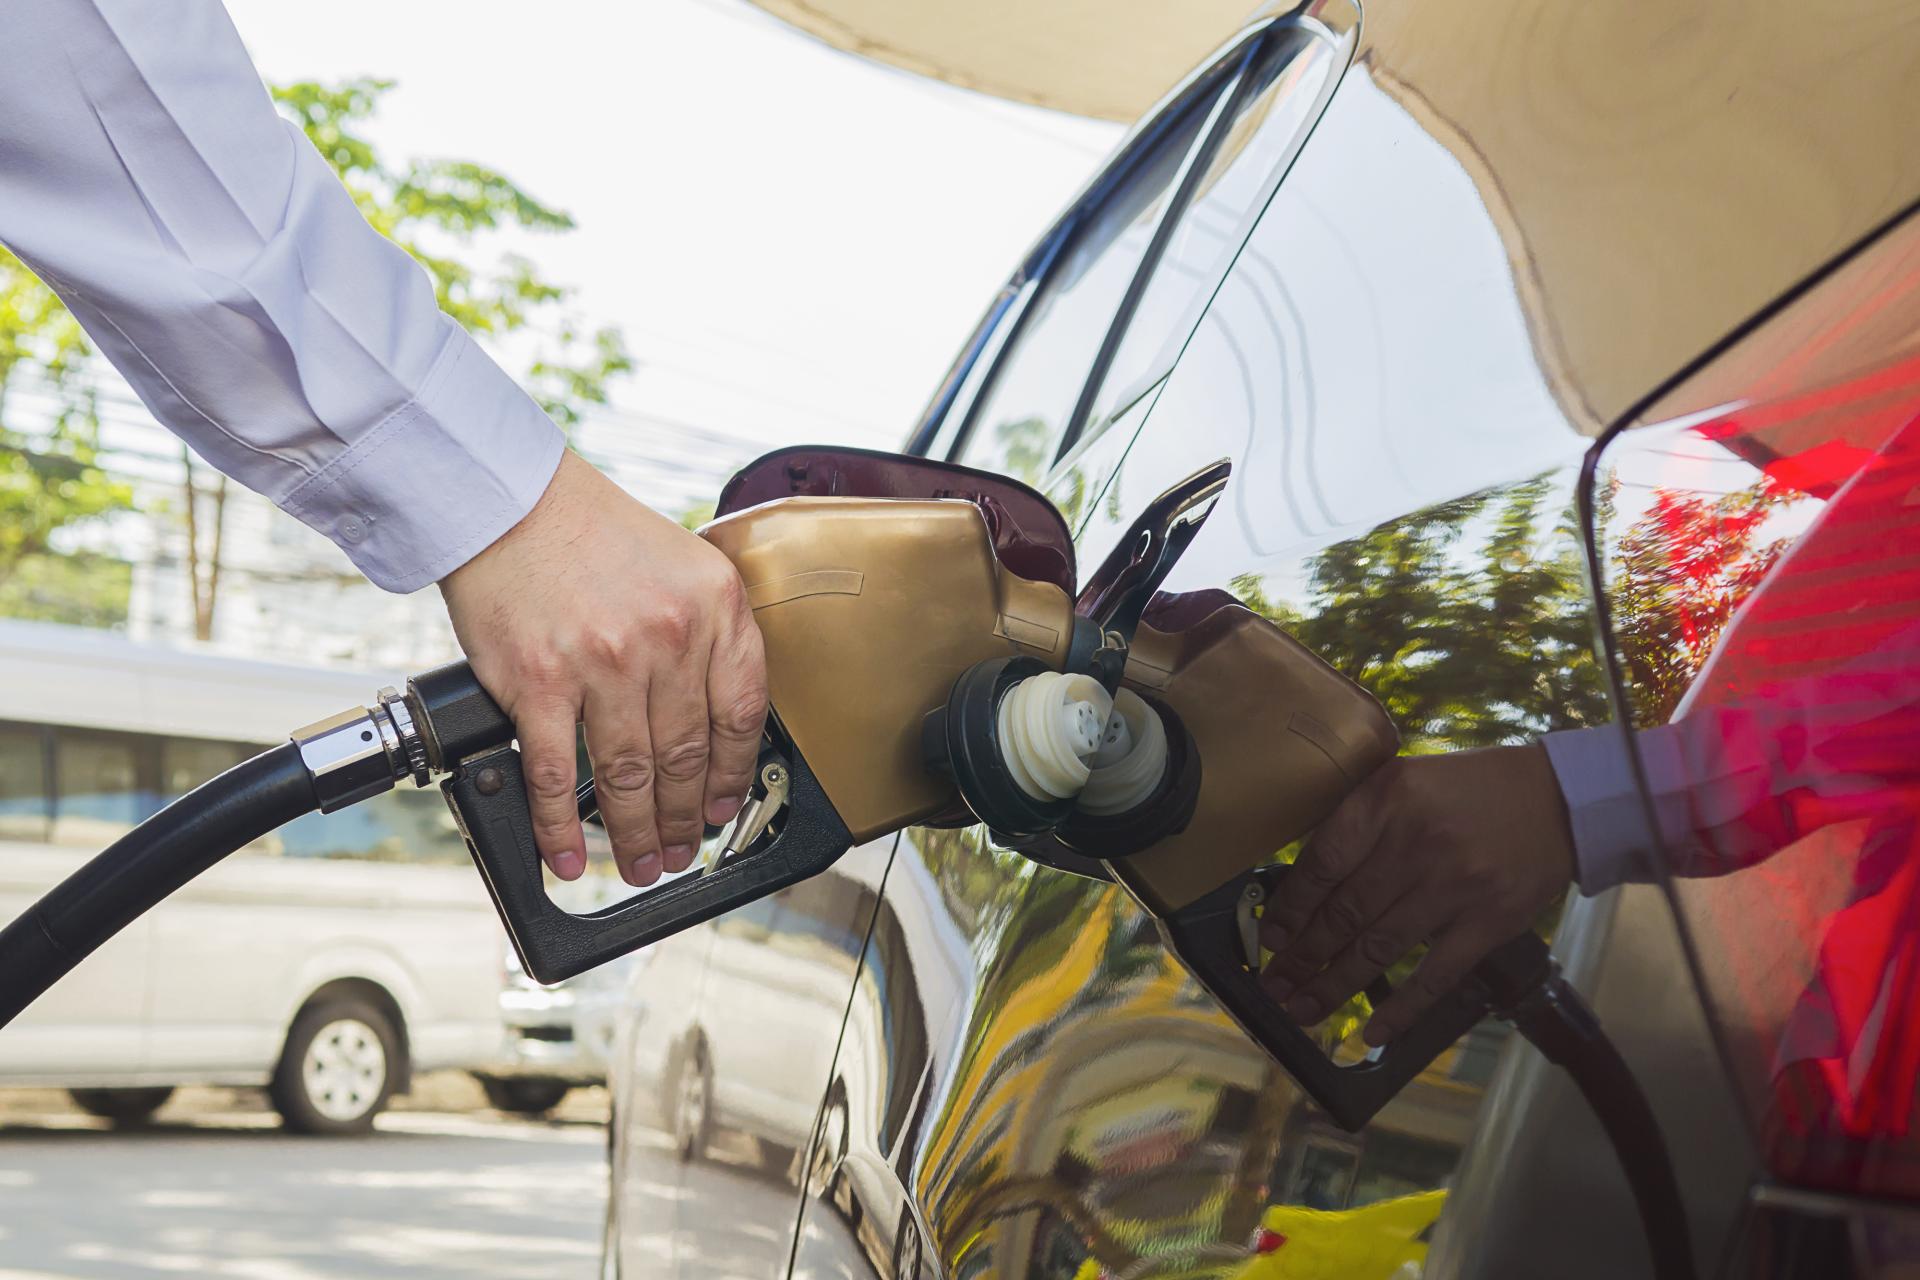 Preço da gasolina vai cair mais de 20%, diz governo. Veja redução estimada para cada estado